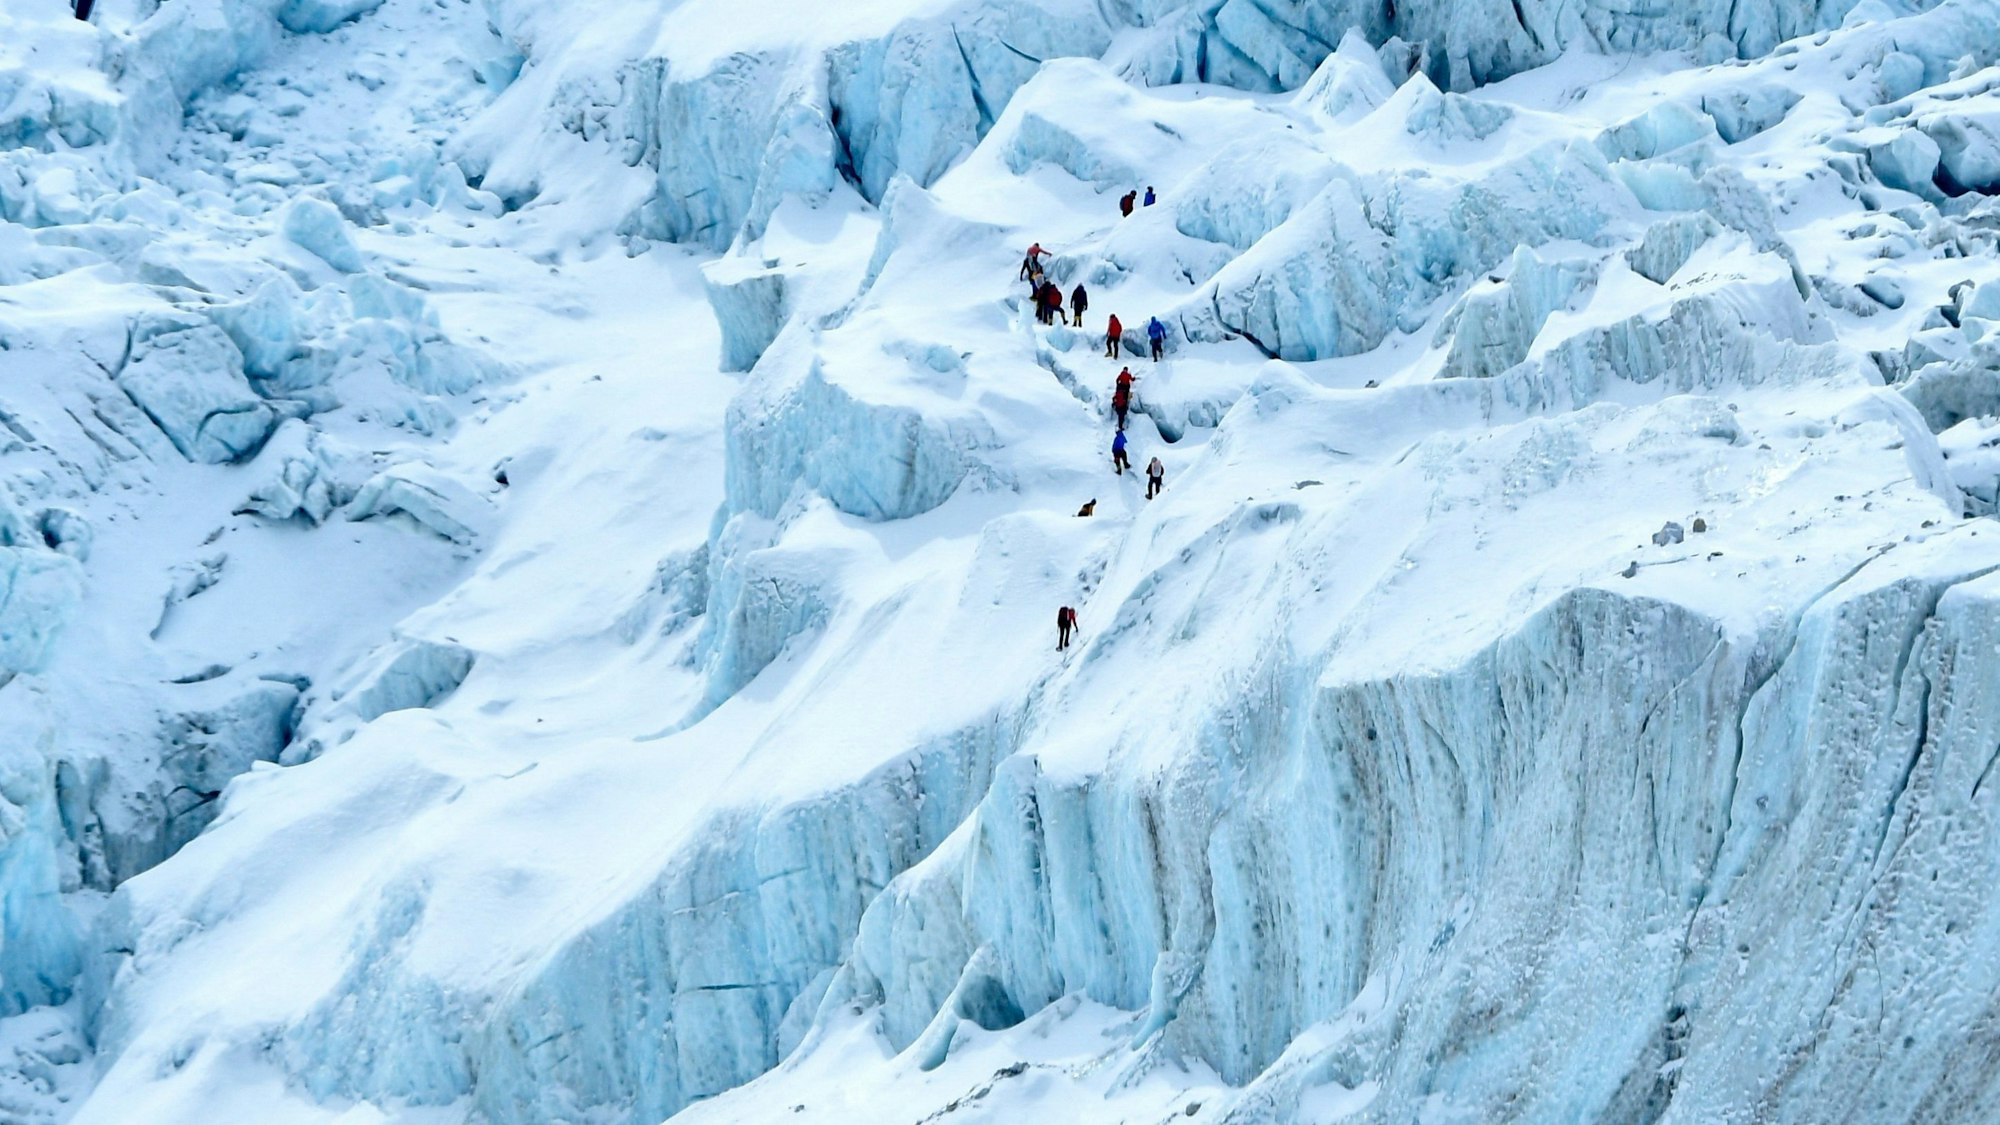 Bergsteiger bahnen sich ihren Weg durch den Khumbu-Gletscher nahe dem Basislager am Mount Everest. Die Eismassen im Himalaya könnten einer Studie zufolge bis 2100 zu 80 Prozent verschwunden sein. Die Himalaya-Gletscher sind für die Wasserversorgung von Milliarden Menschen unerlässlich. (Archivbild)